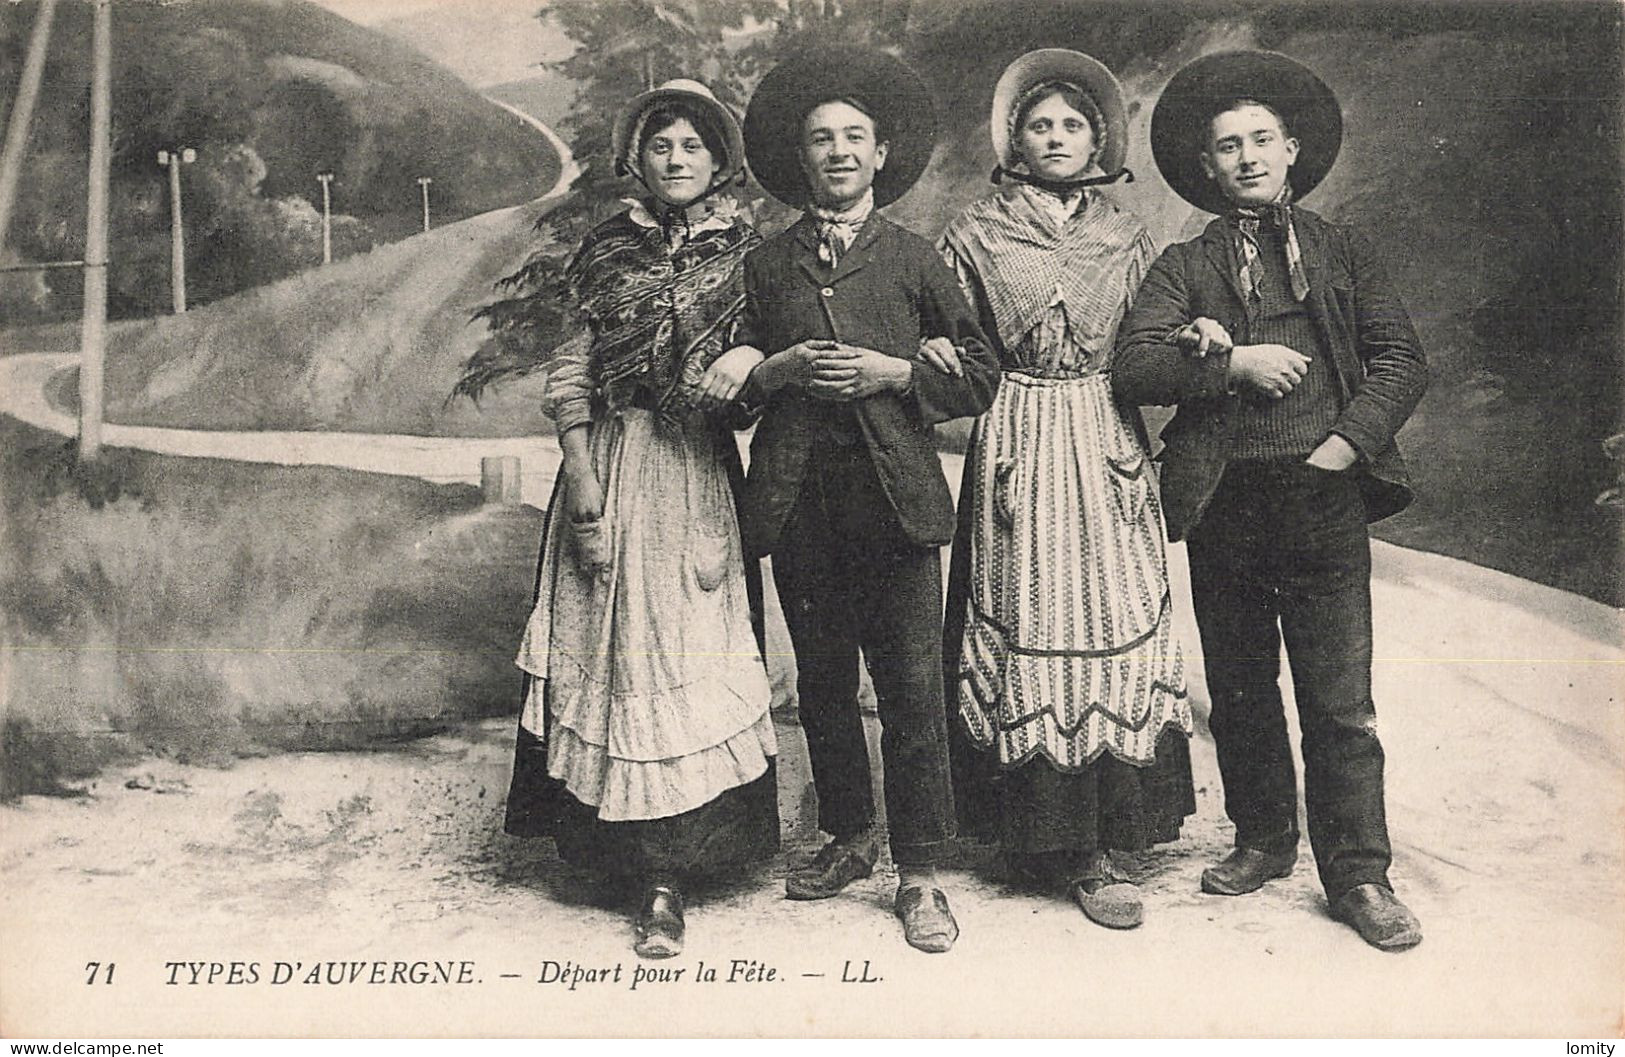 Destockage lot de 18 cartes postales CPA Auvergne type types folklore vieux berger paysanne paysannes patre